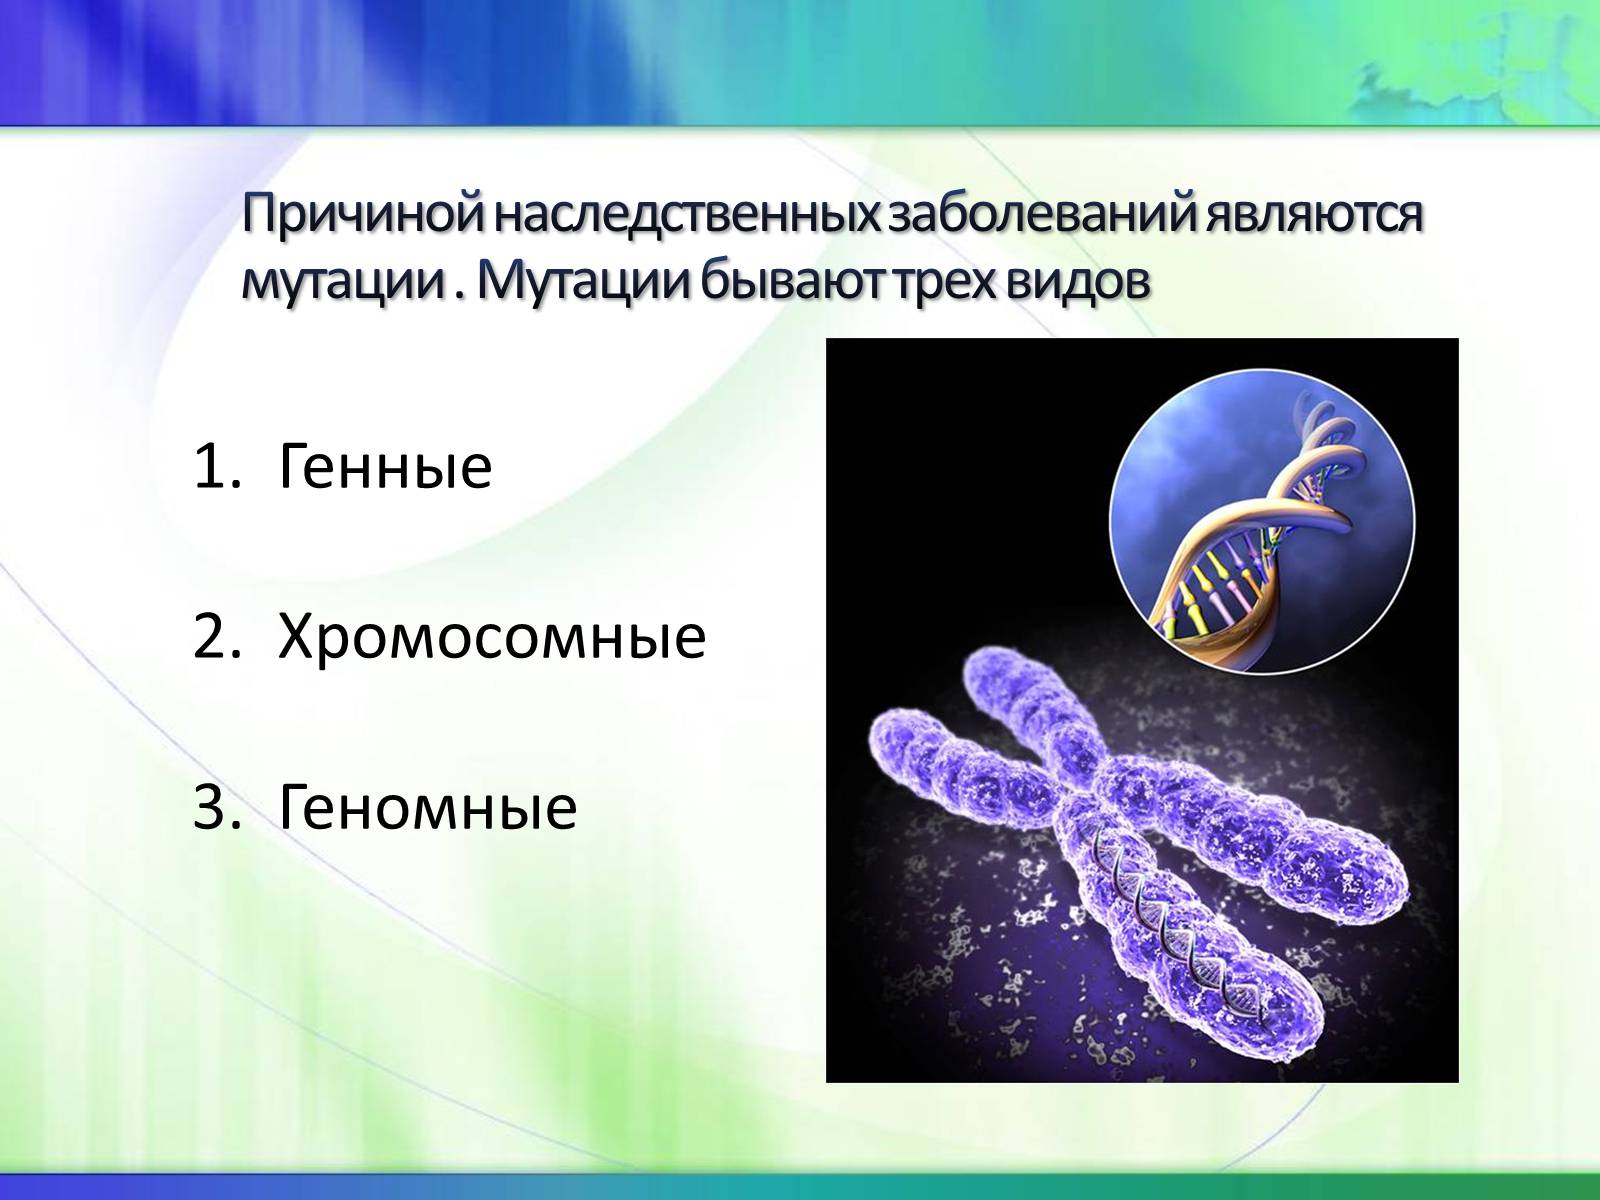 Наследственные заболевания описание. Генные геномные и хромосомные болезни. Наследственные болезни и мутации. Хромосомные наследственные болезни. Наследственные заболевания геномные мутации.